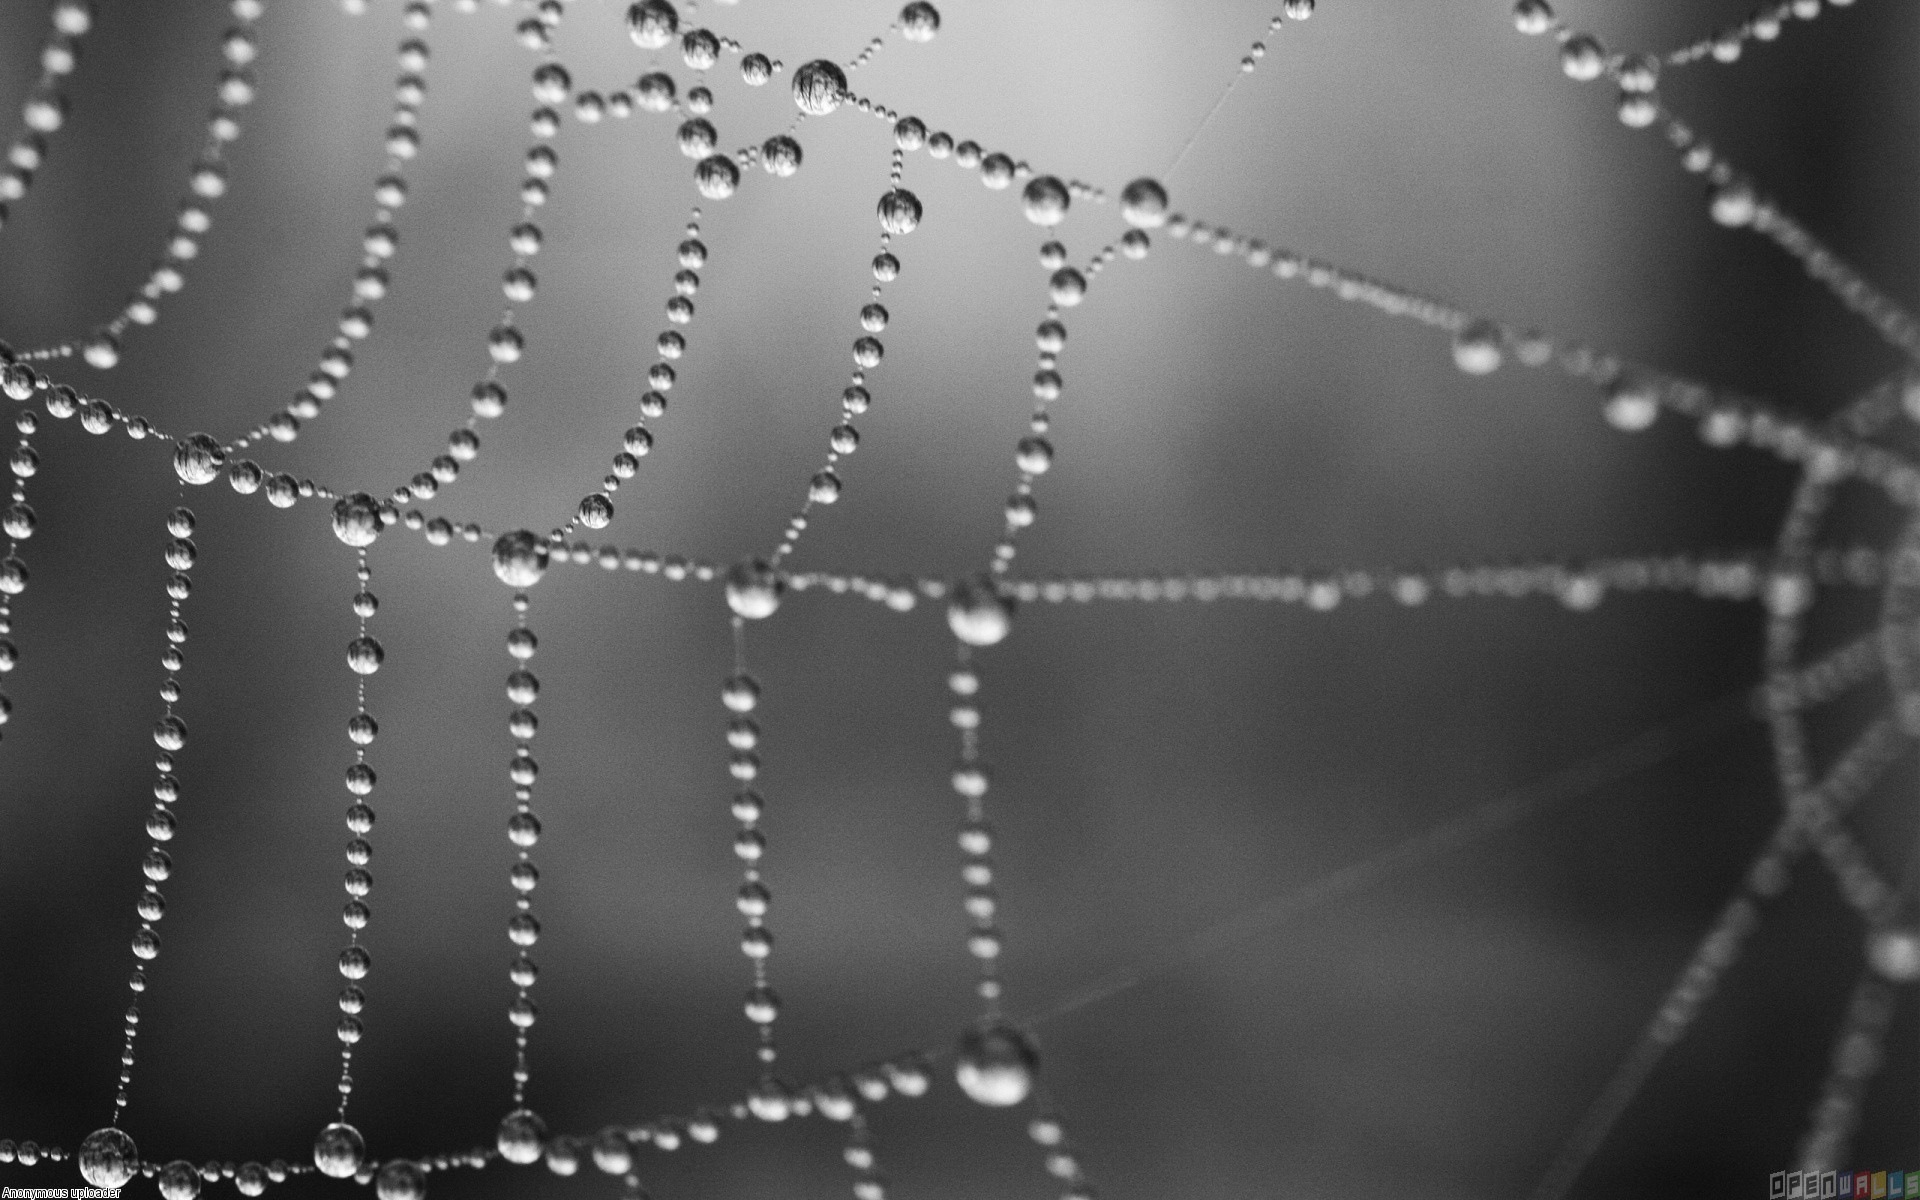 Wet spider web photo